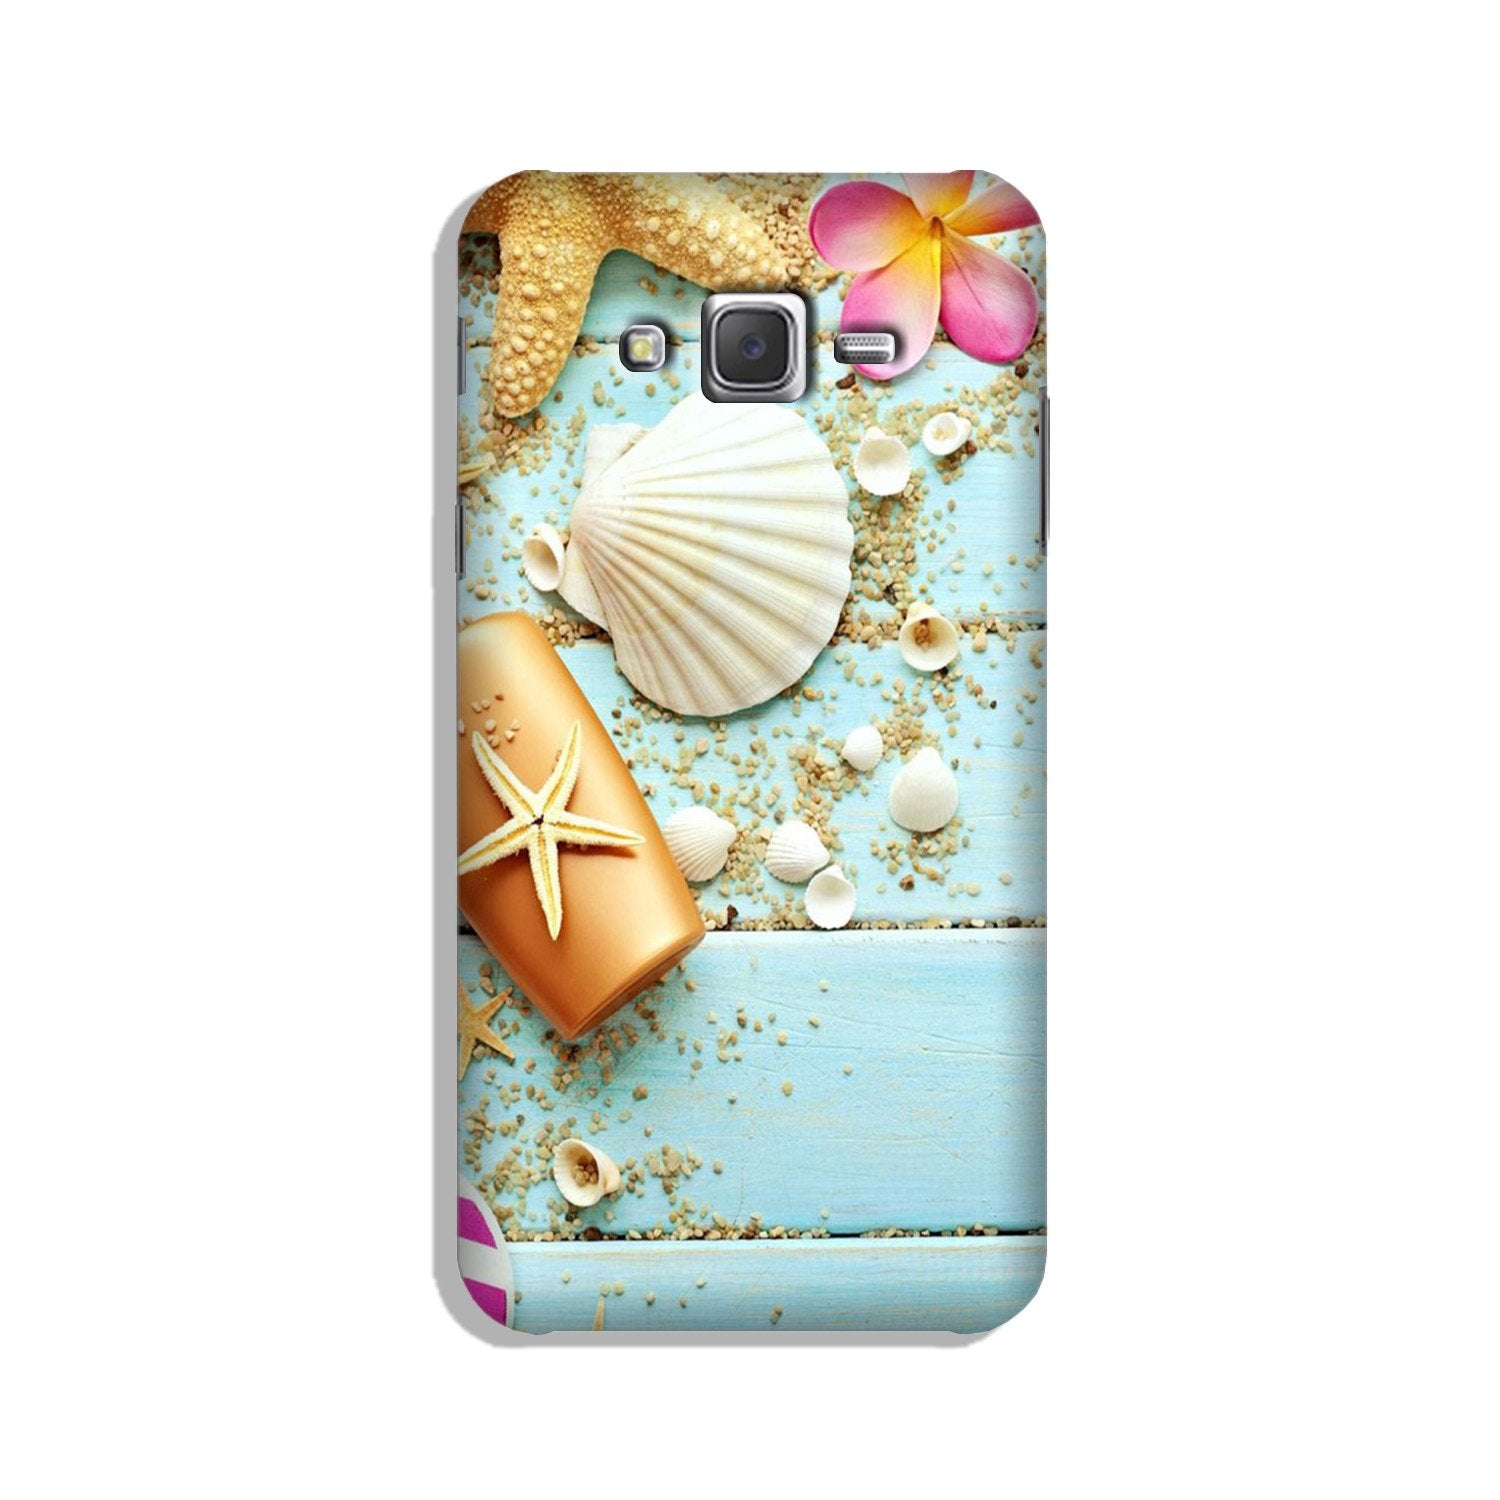 Sea Shells Case for Galaxy J5 (2015)